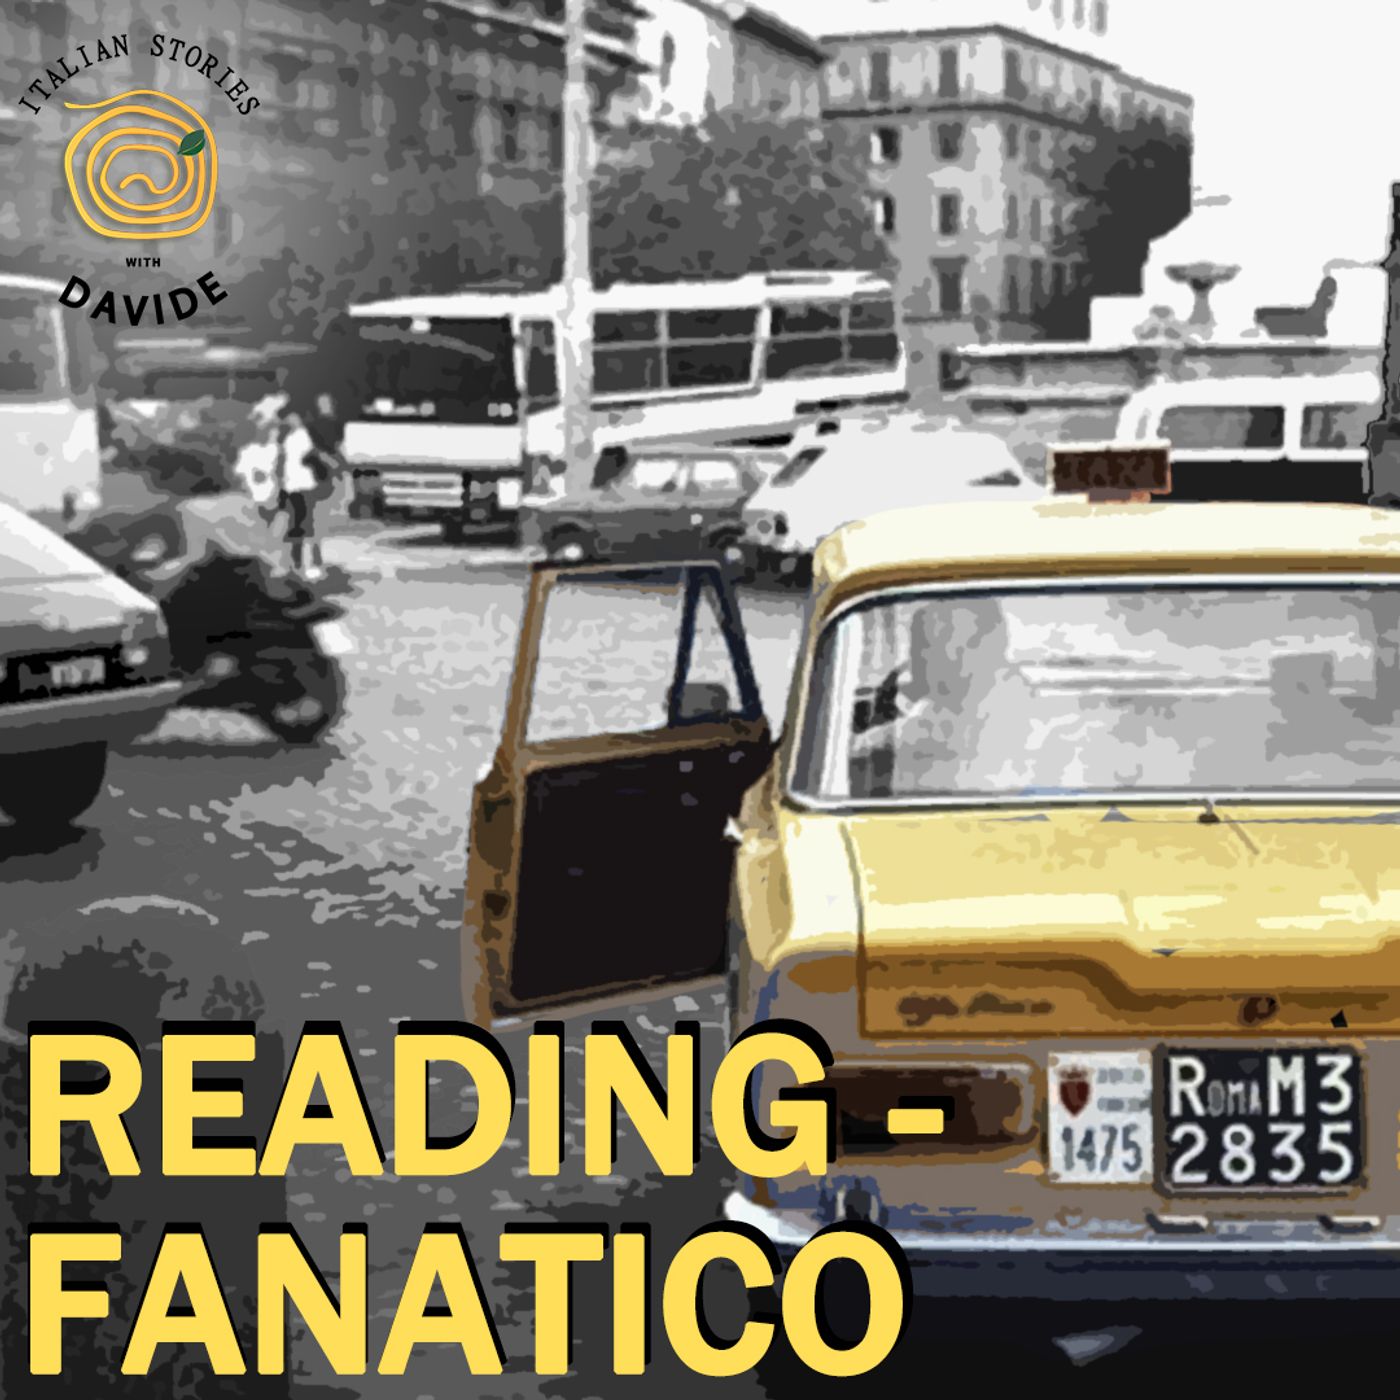 READING - Fanatico